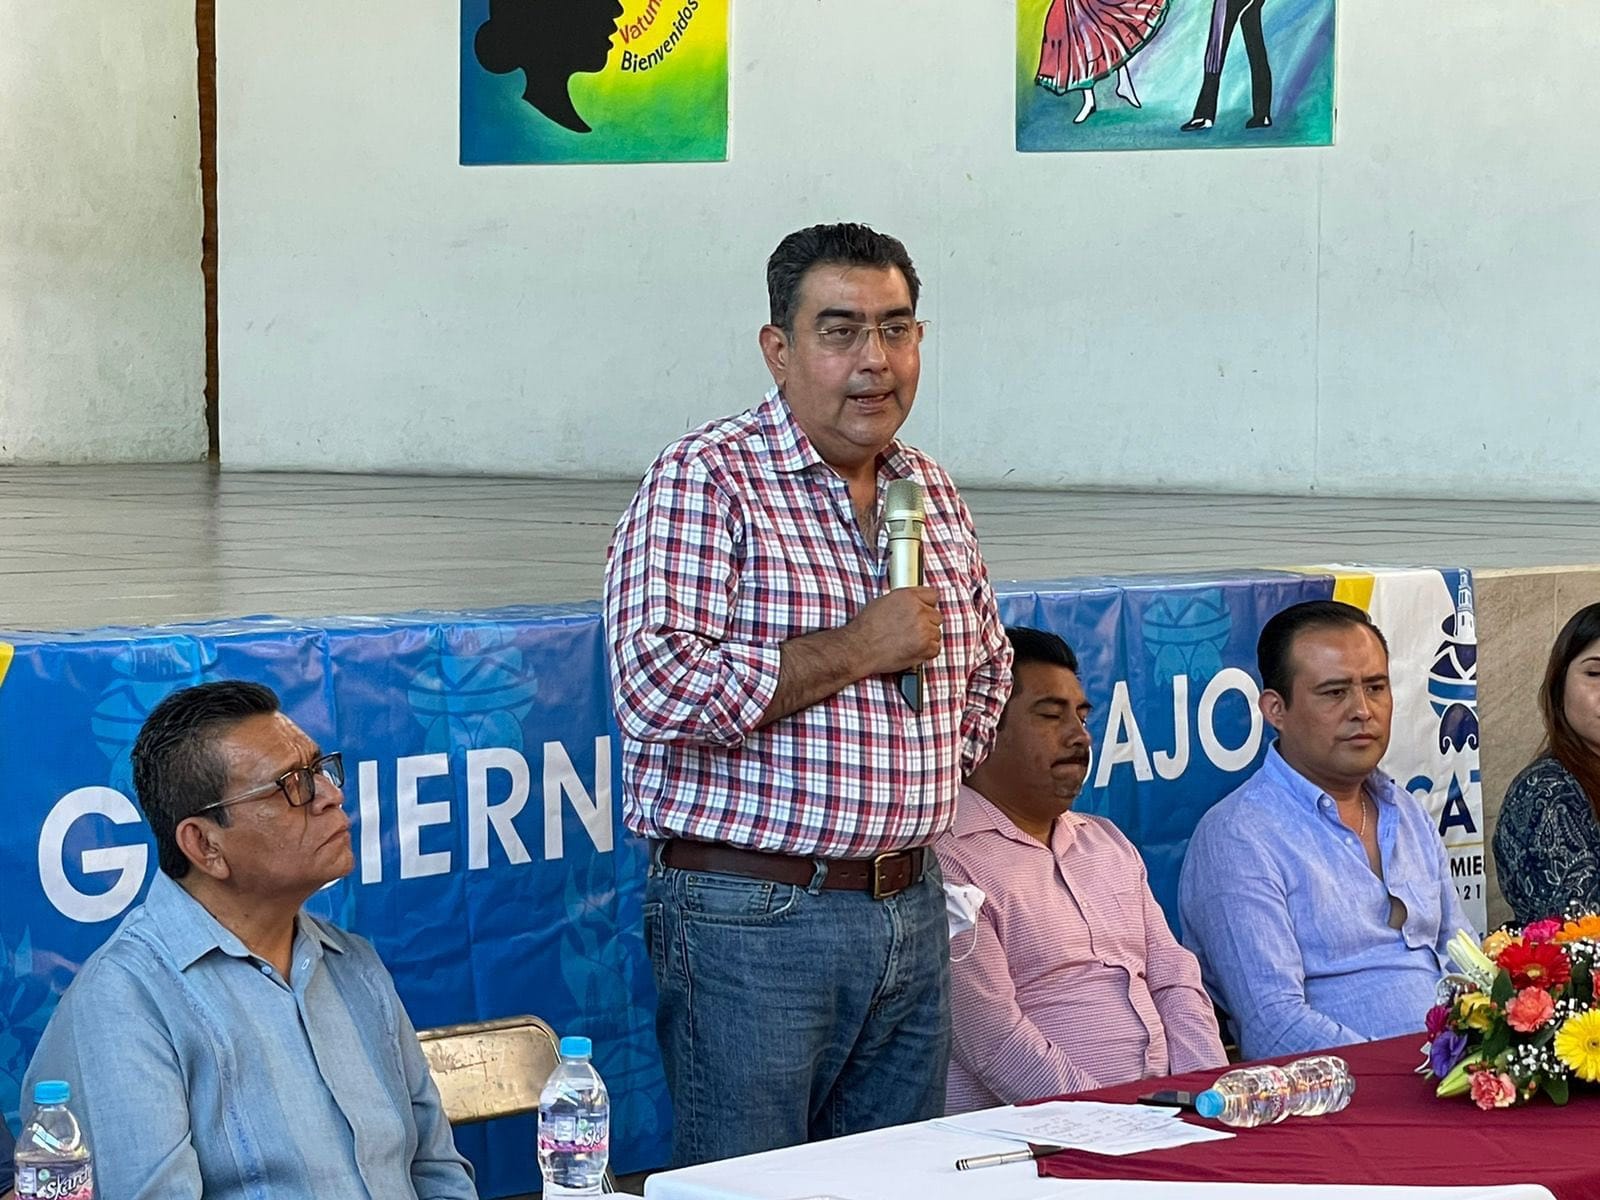 La atención a migrantes se abordará en el Congreso de Puebla: Salomón